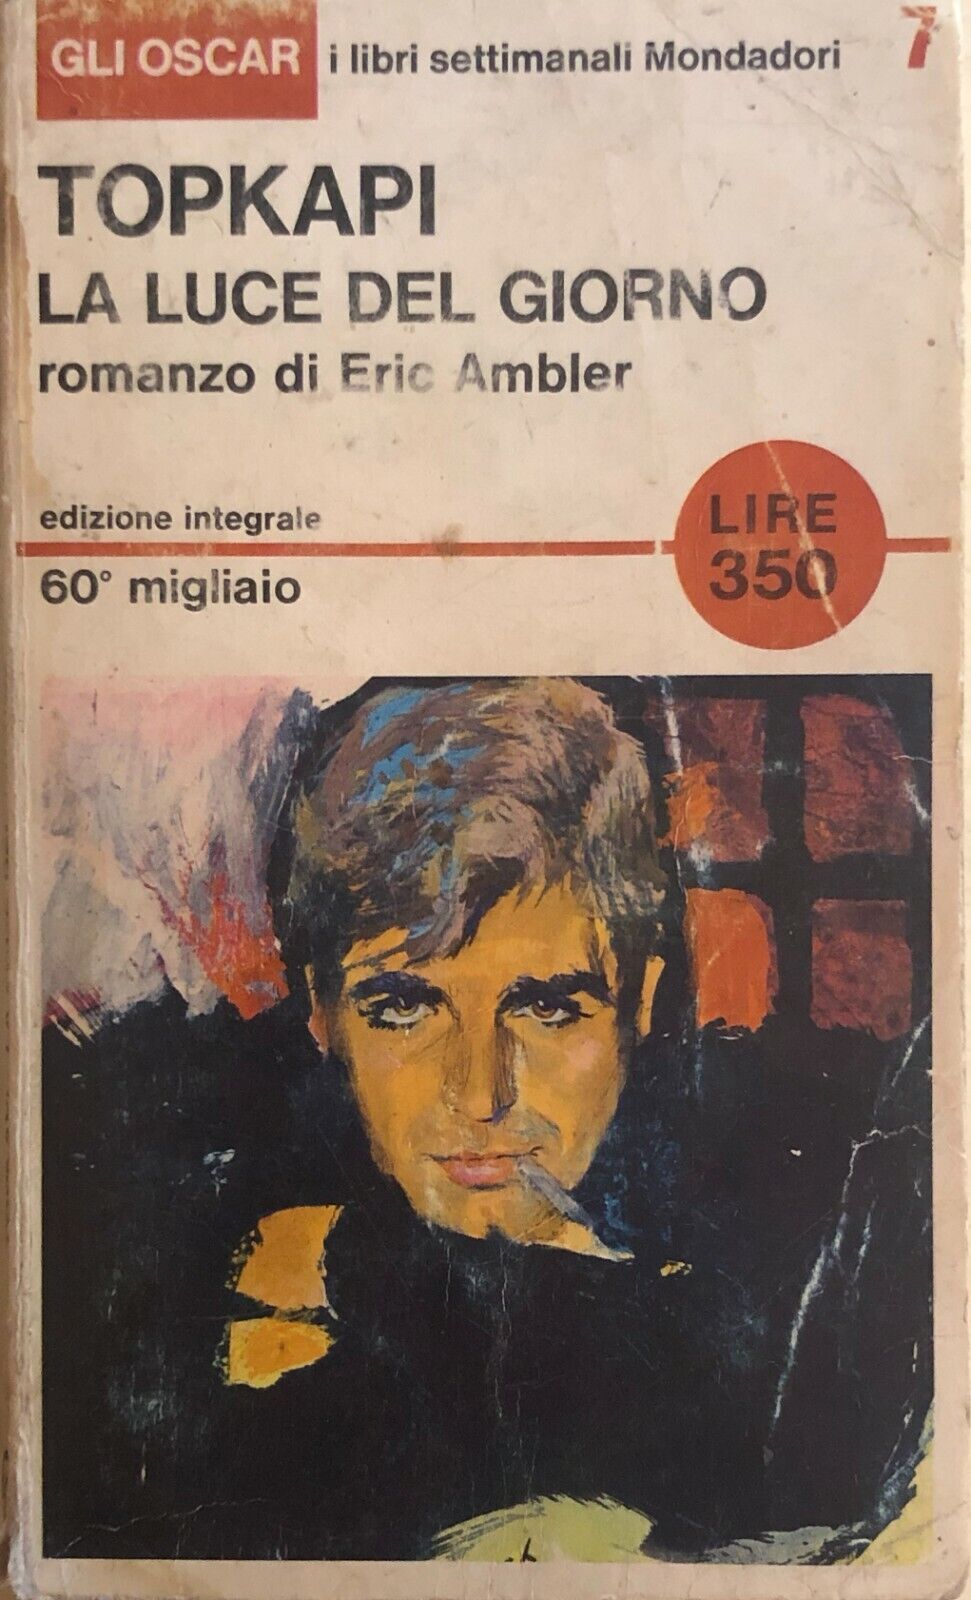 Topkapi, la luce del giorno di Eric Ambler, 1965, Mondadori